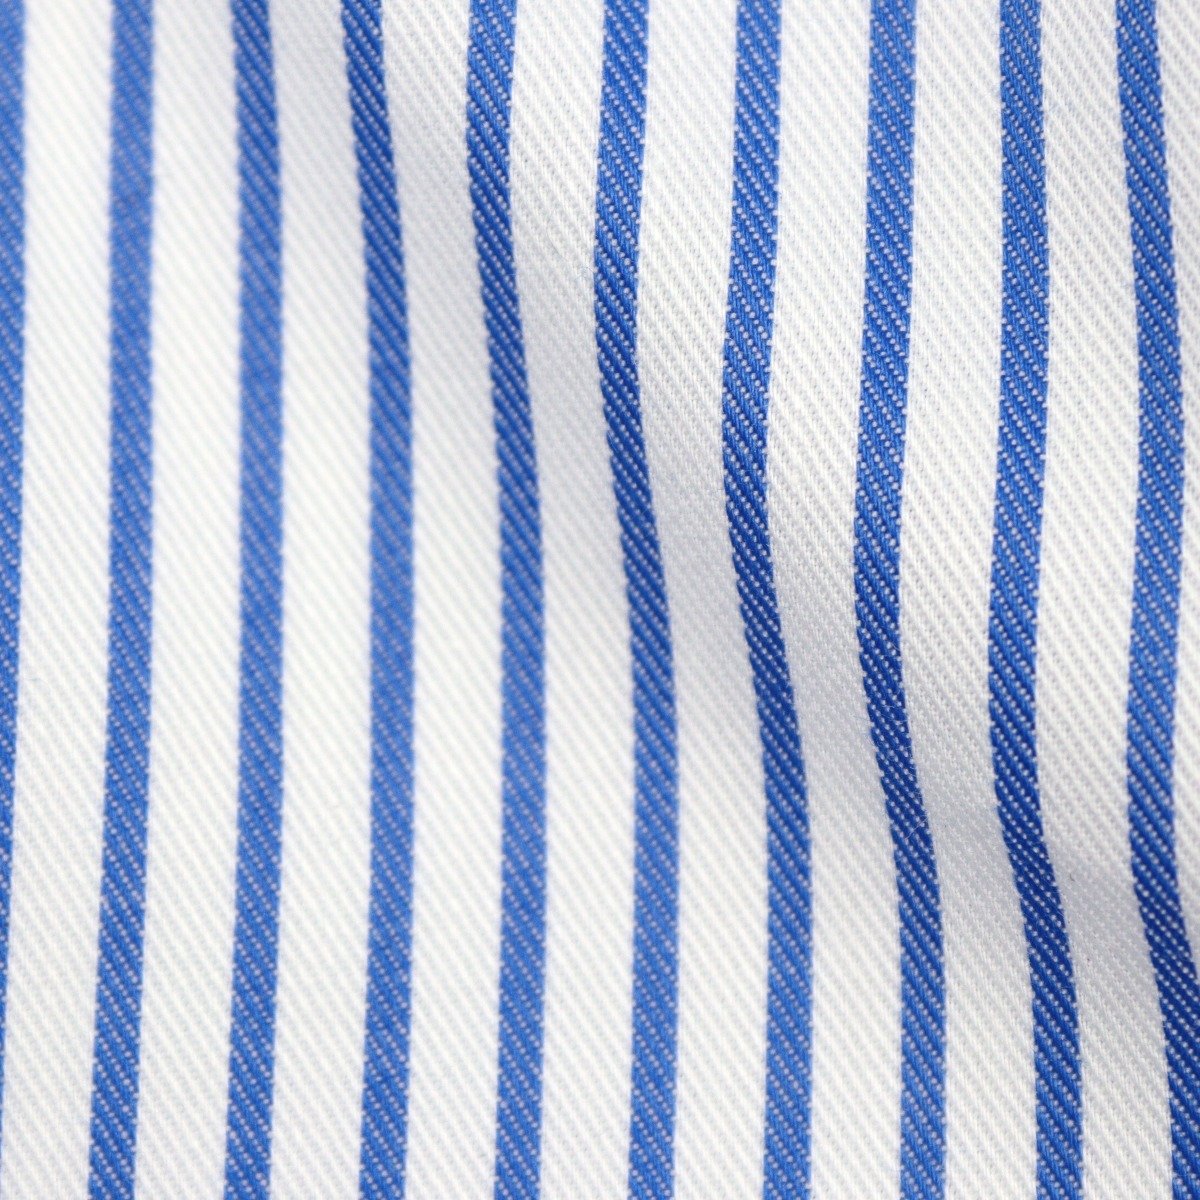 Cordone 1956 blue slim fit striped twill shirt